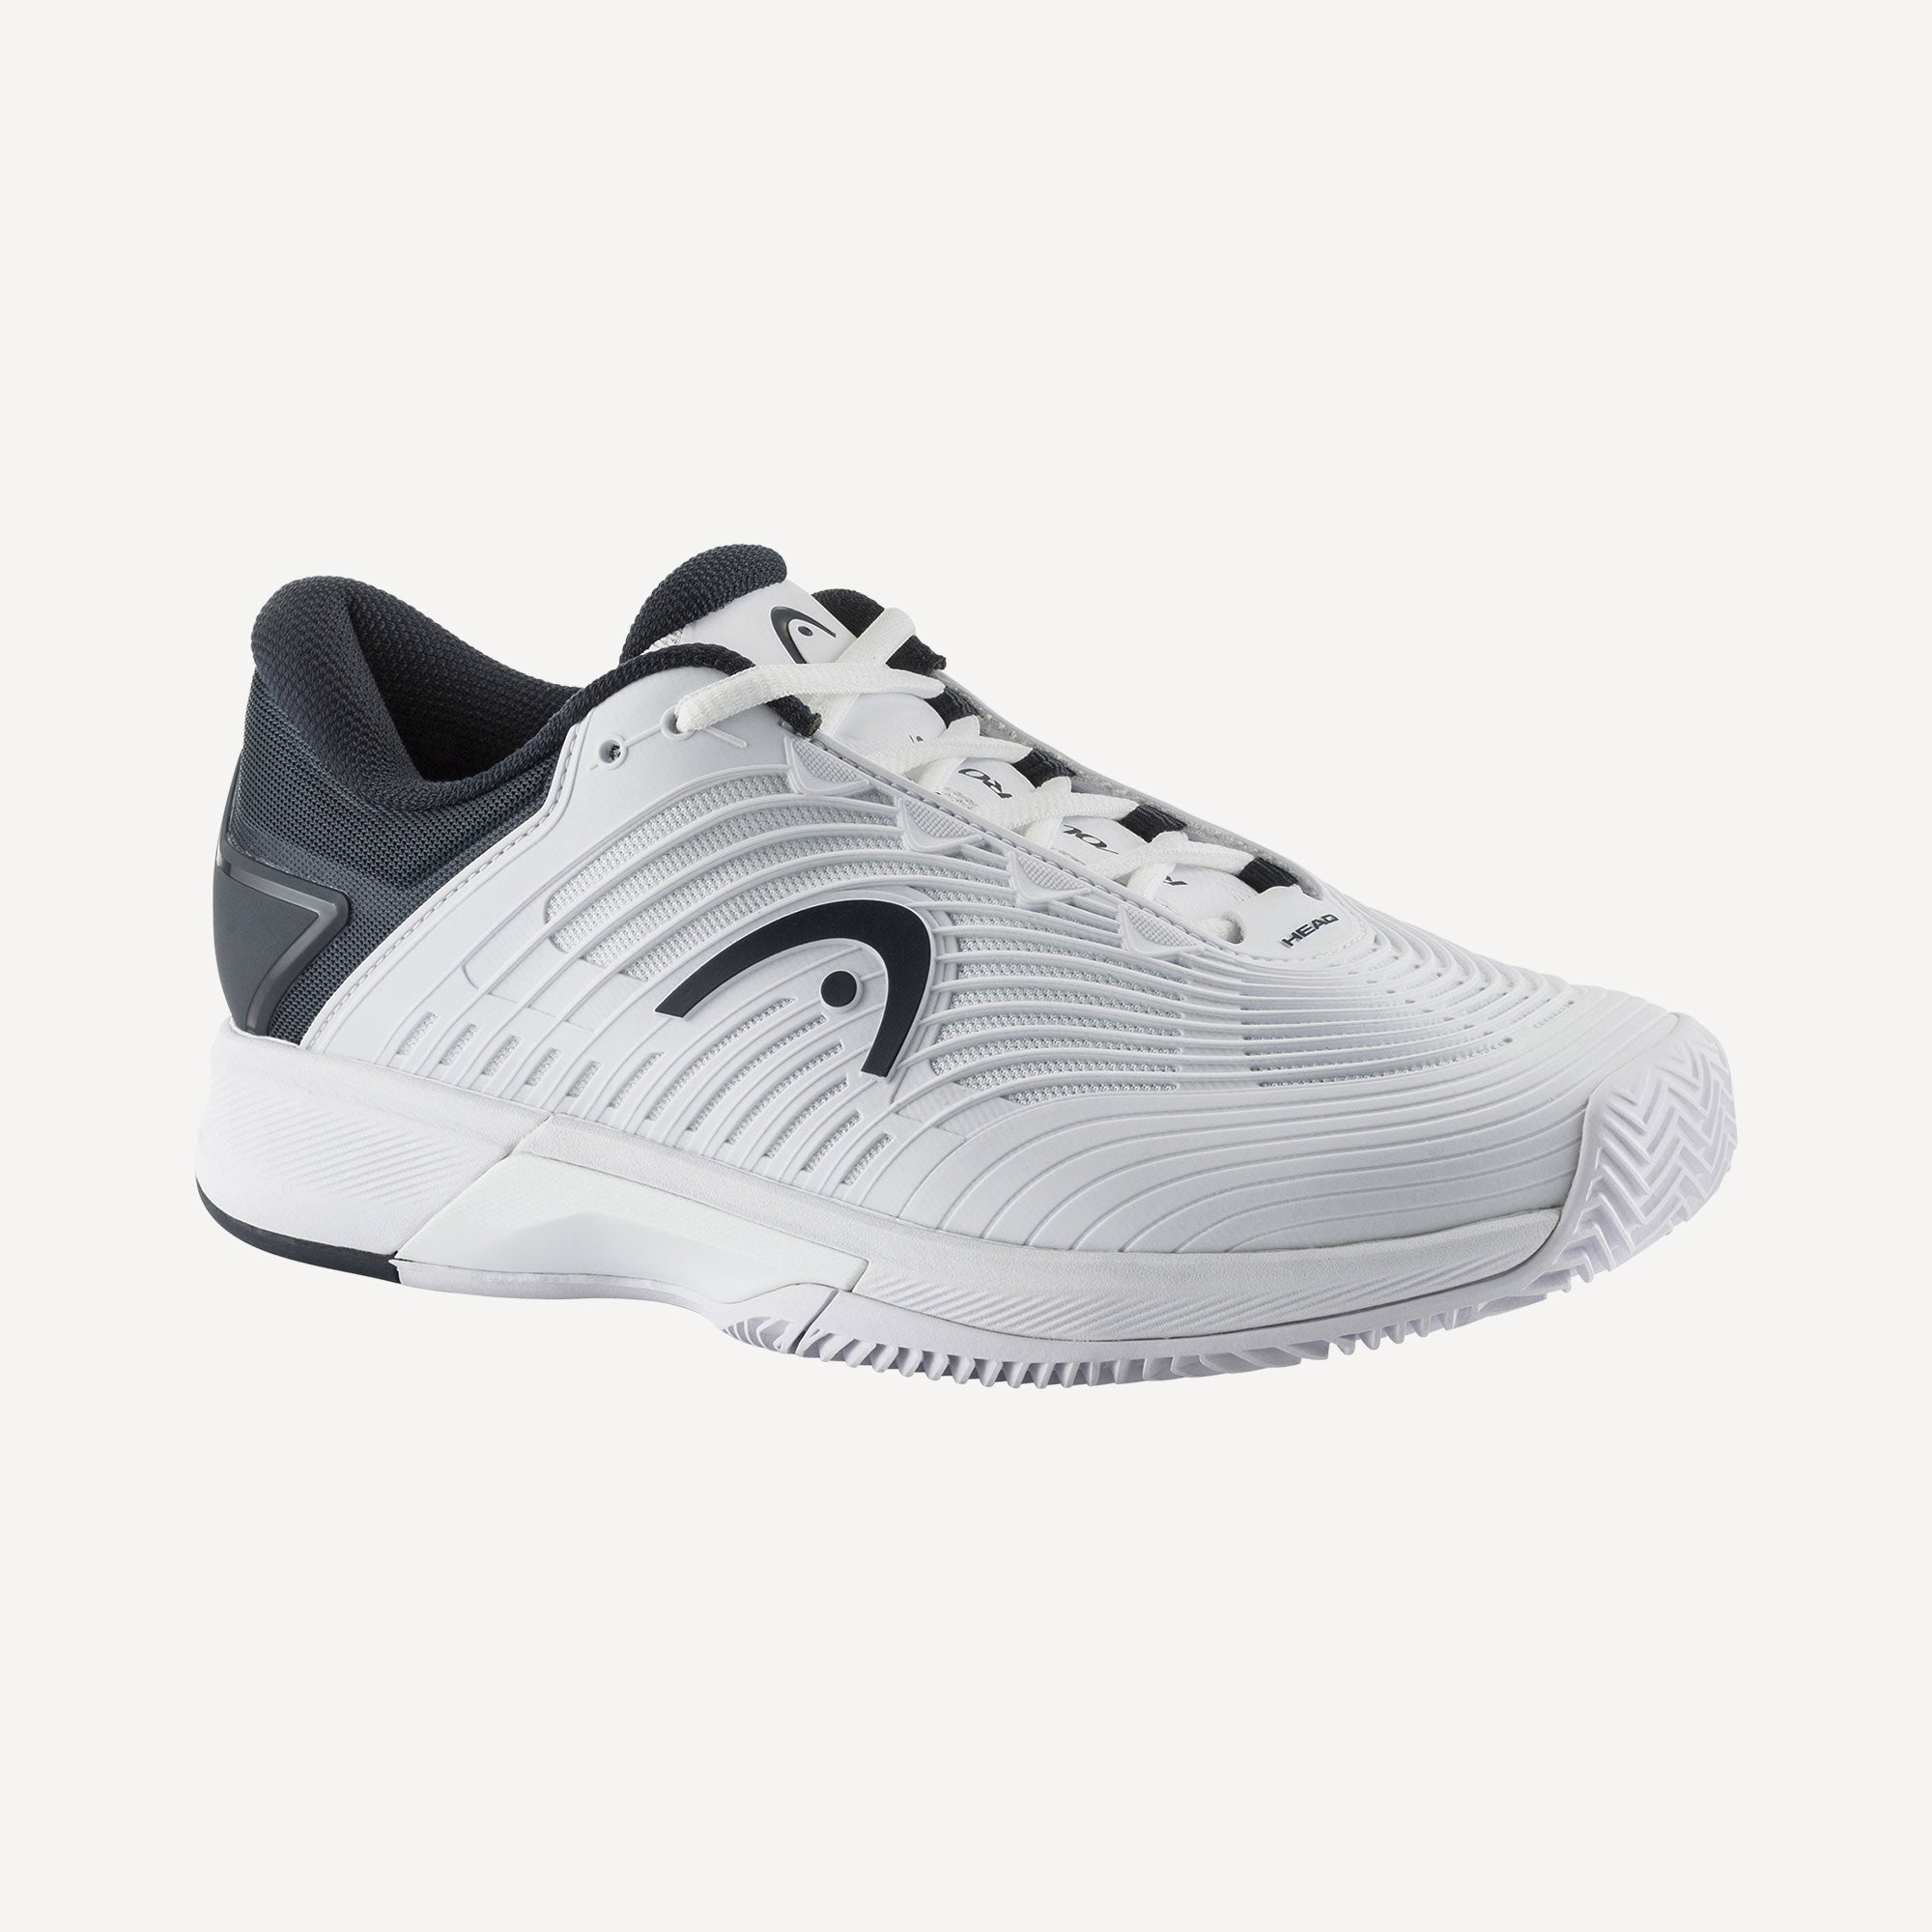 HEAD Revolt Pro 4.5 Men's Clay Court Tennis Shoes - White (1)